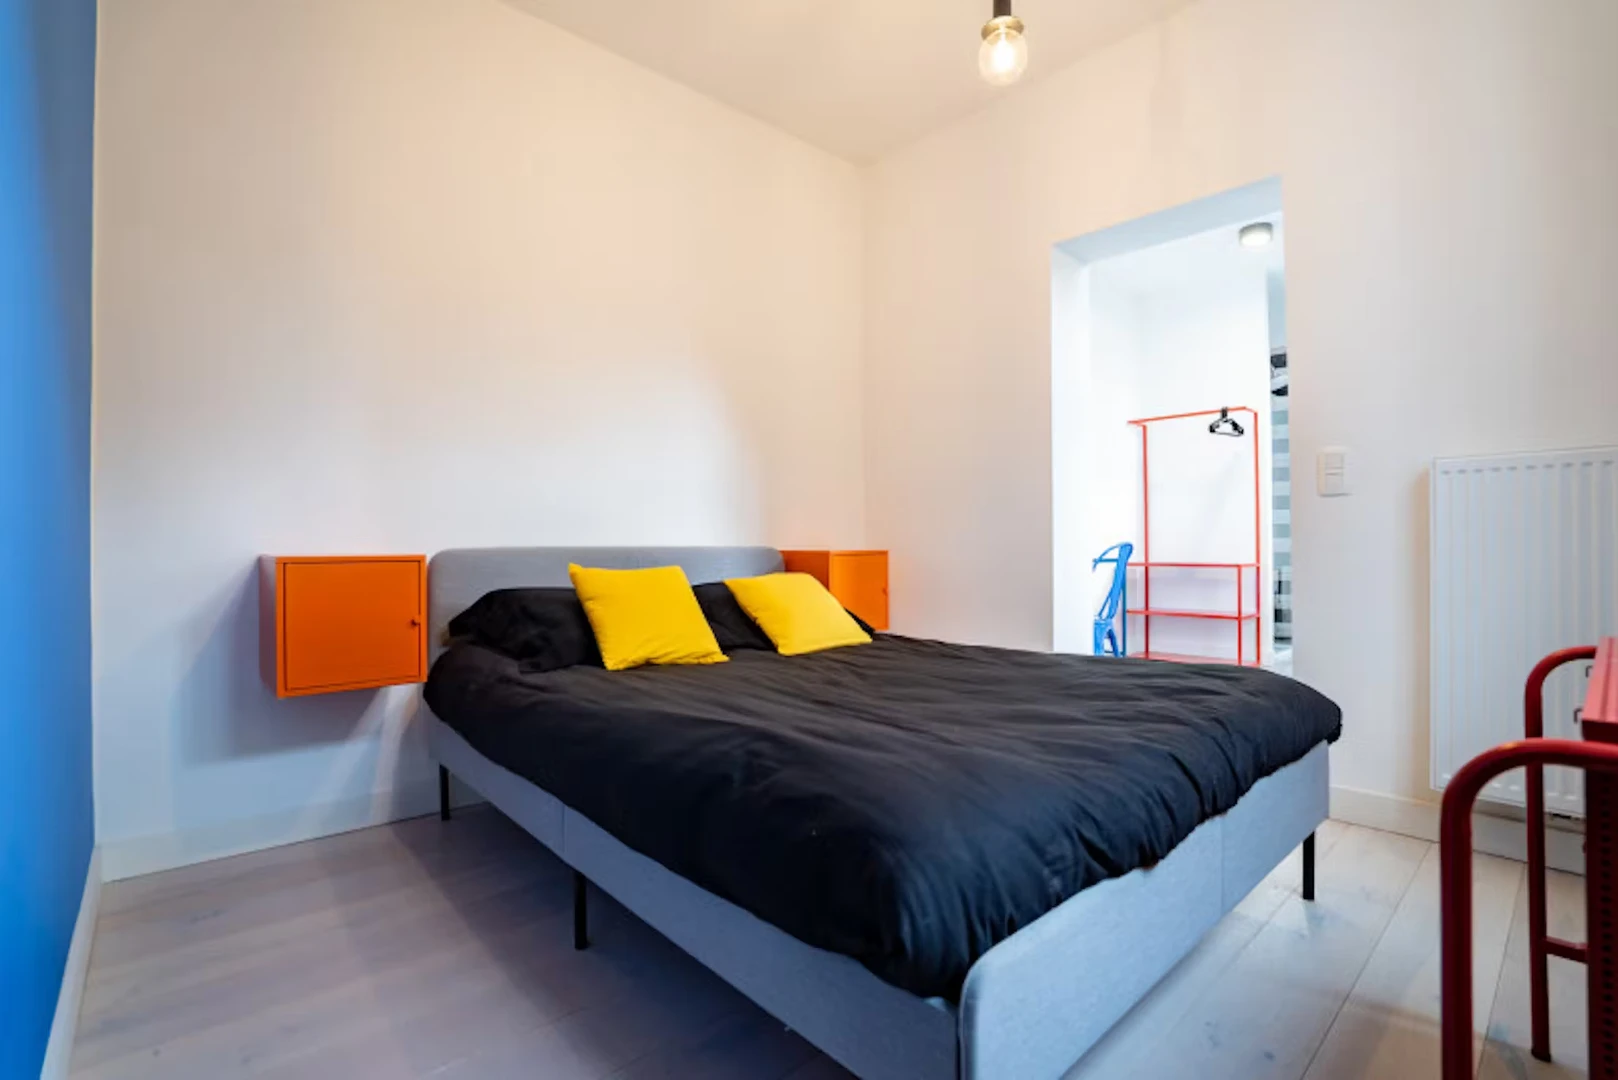 Pokój do wynajęcia z podwójnym łóżkiem w Charleroi